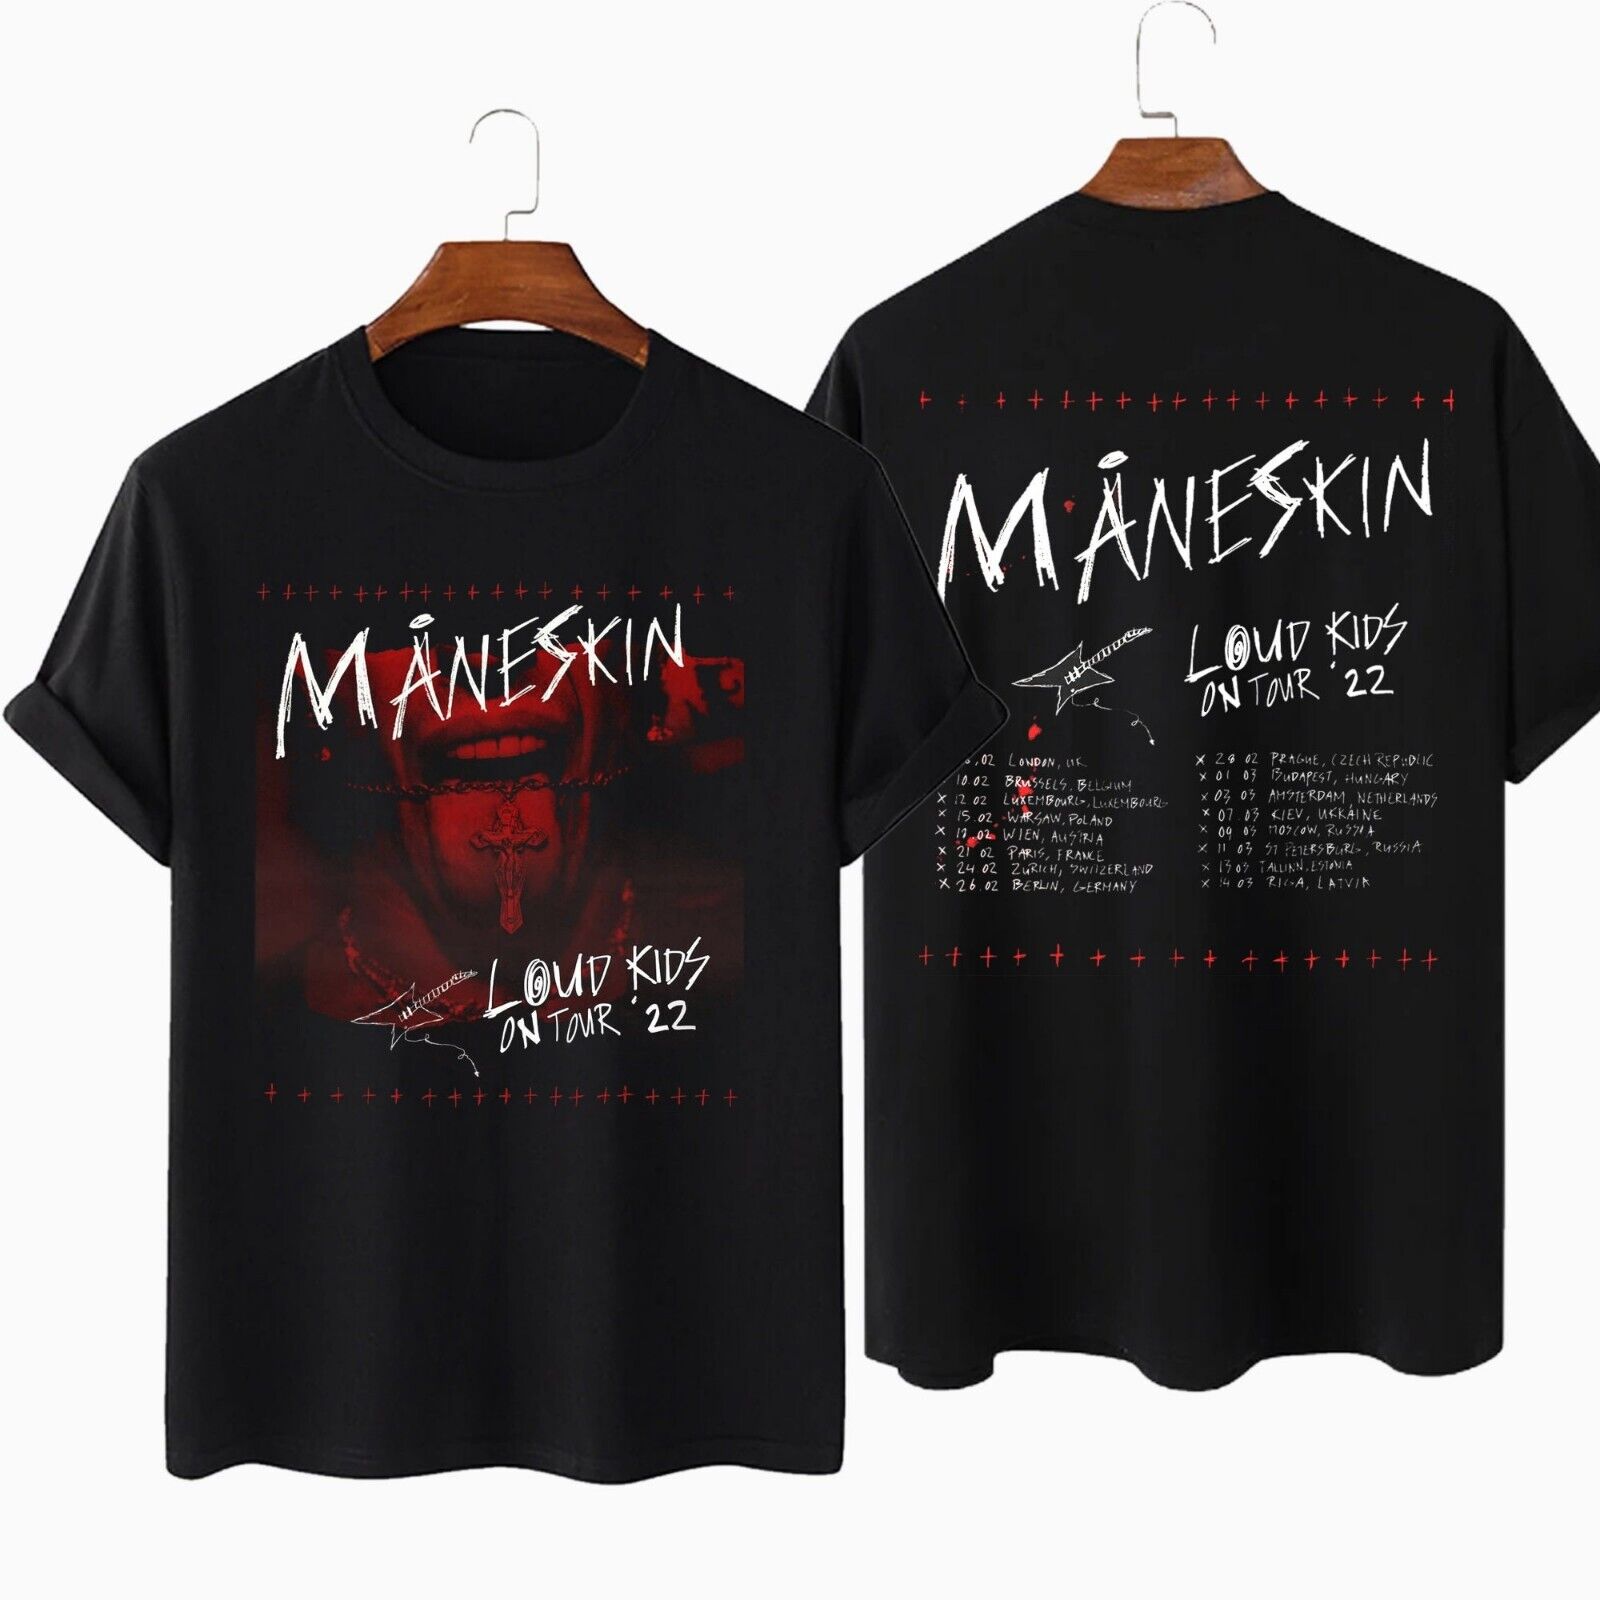 Maneskin Shop - Maneskin™ Official Merch